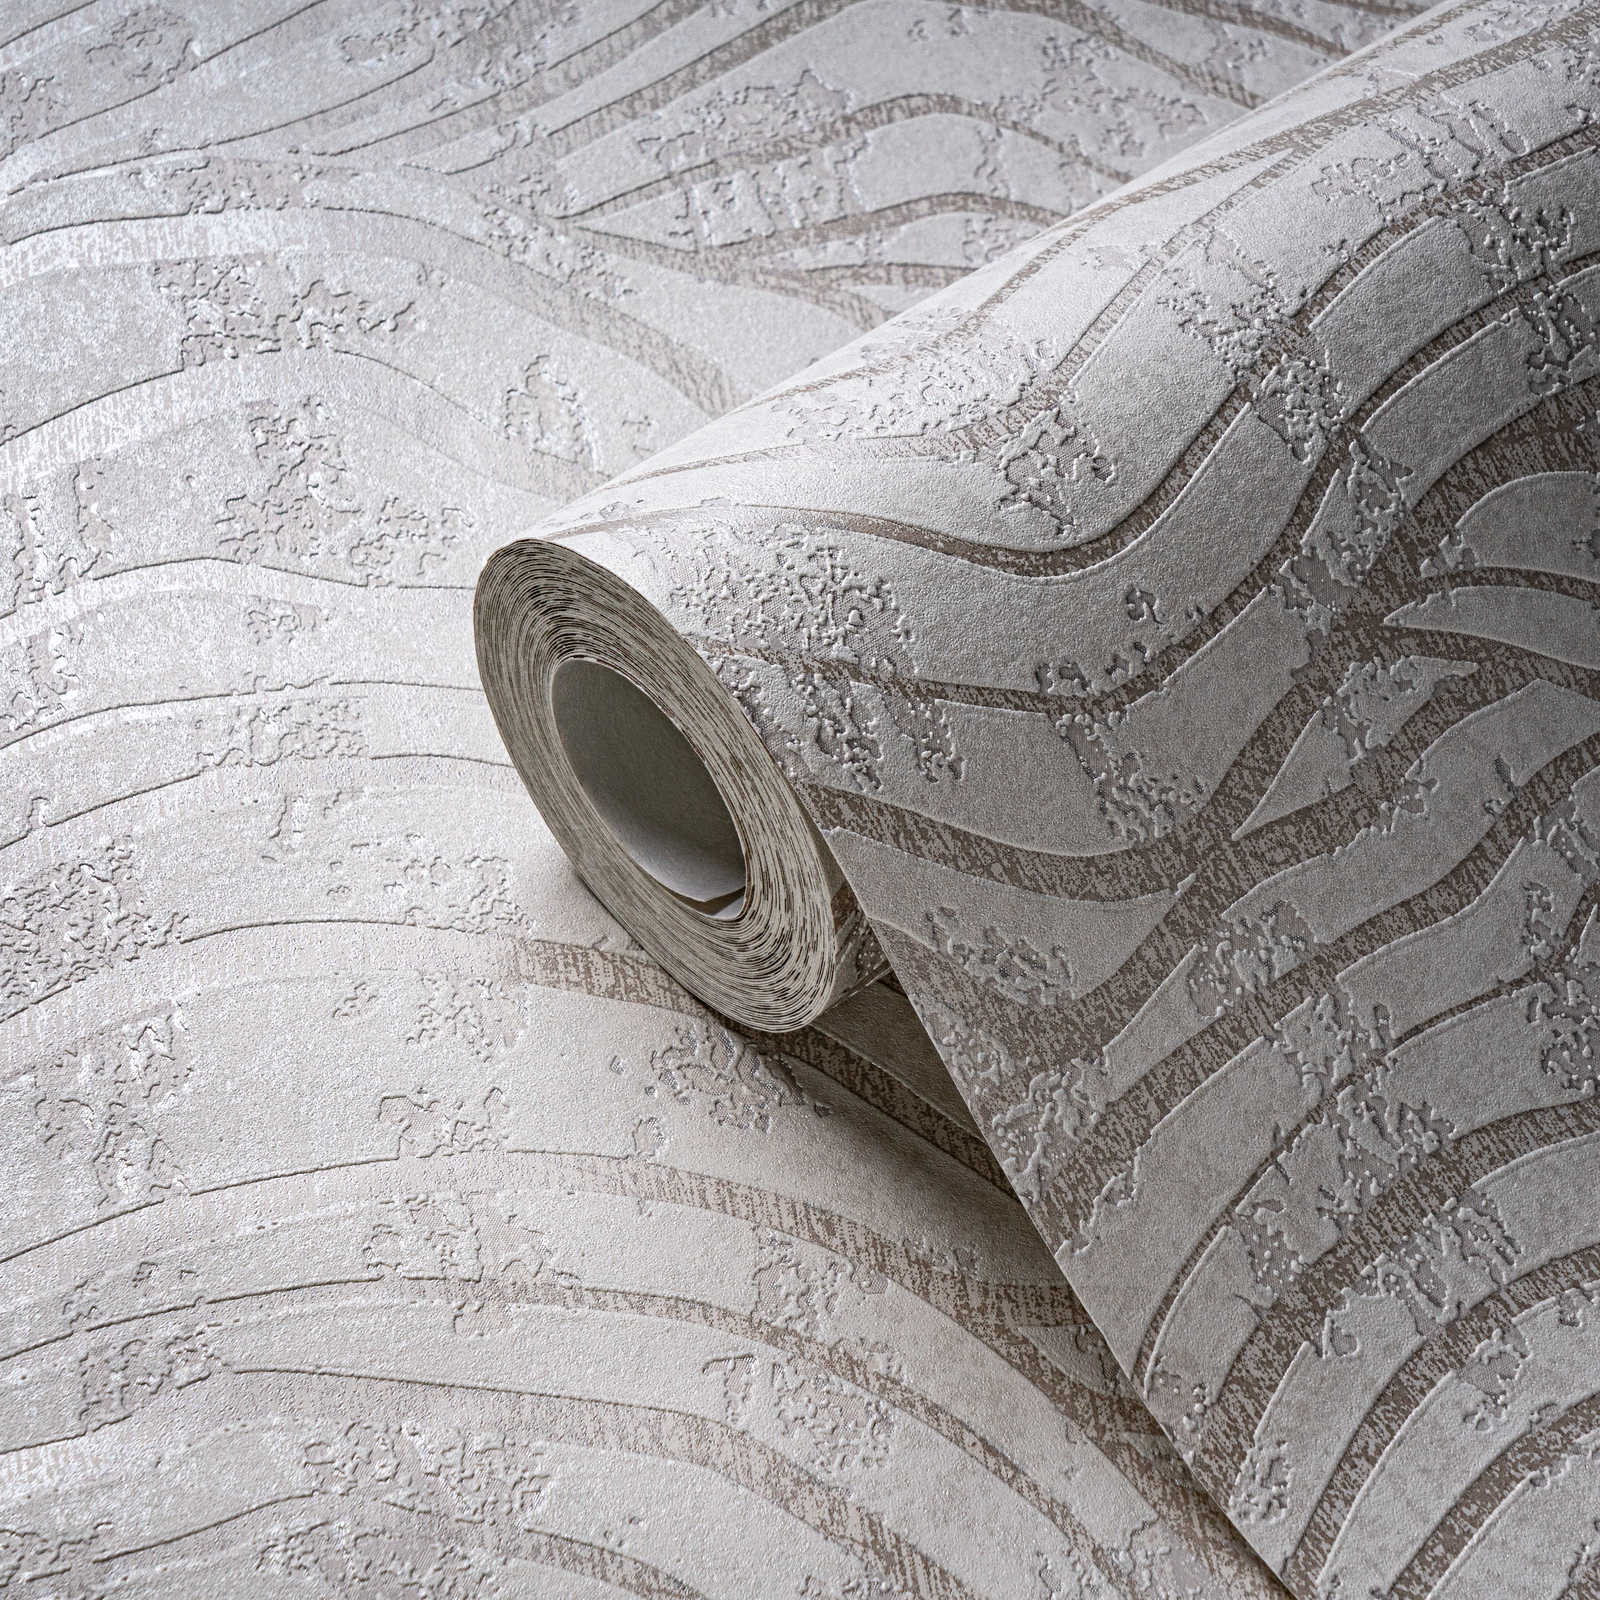             Abstrakte Tapete mit Hügel Muster in sanften Farben – Weiß, Silber
        